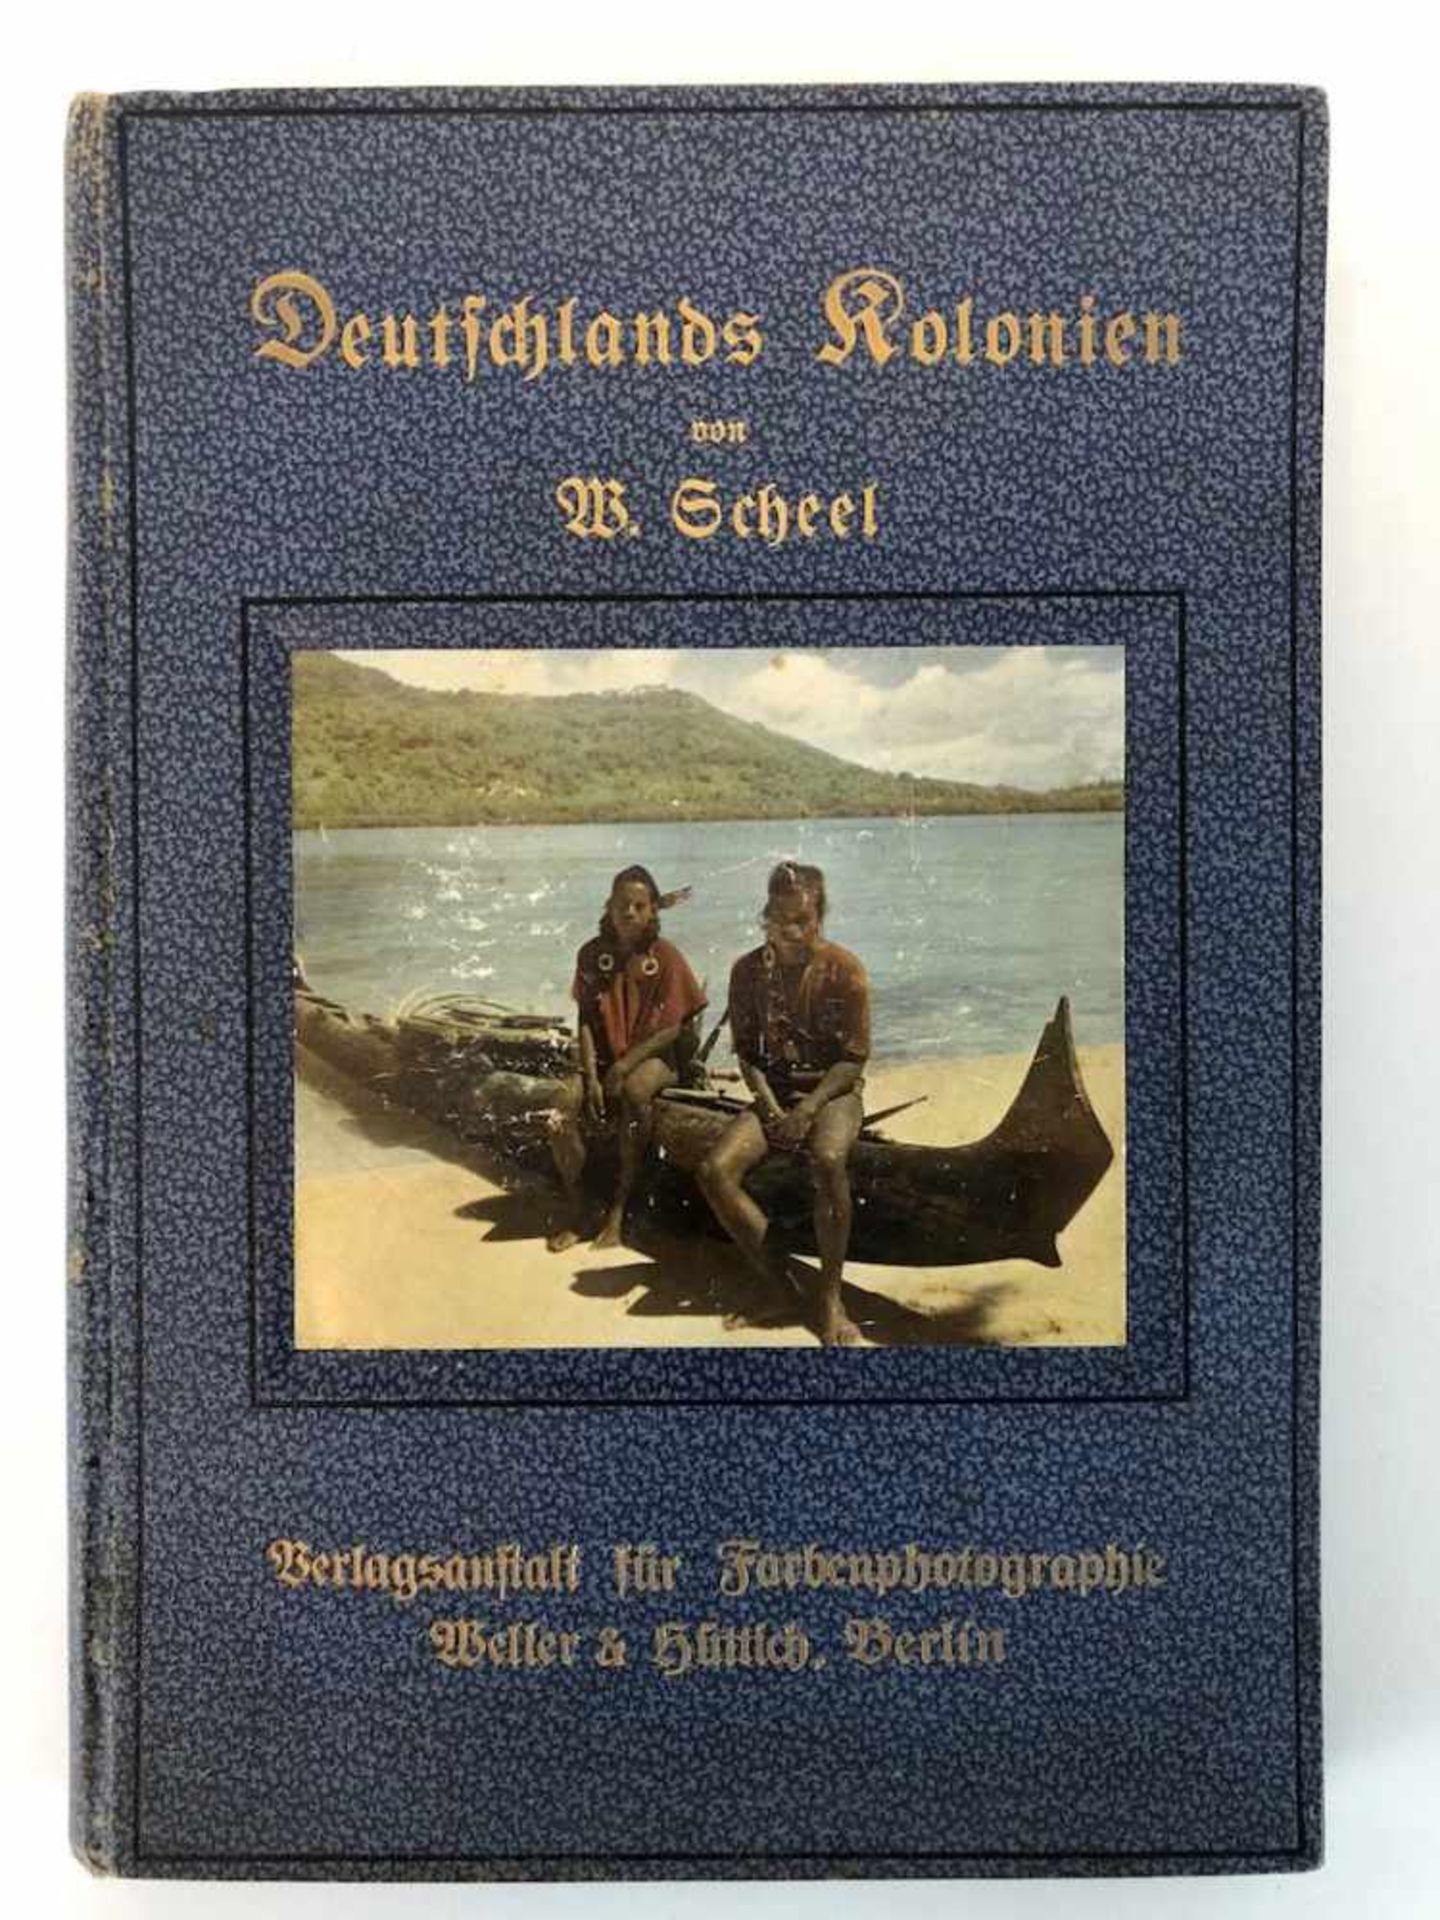 Scheel, Dr. W.: Deutschlands Kolonien in achtzig farbenphotographischen Abbildungen nach eigenen